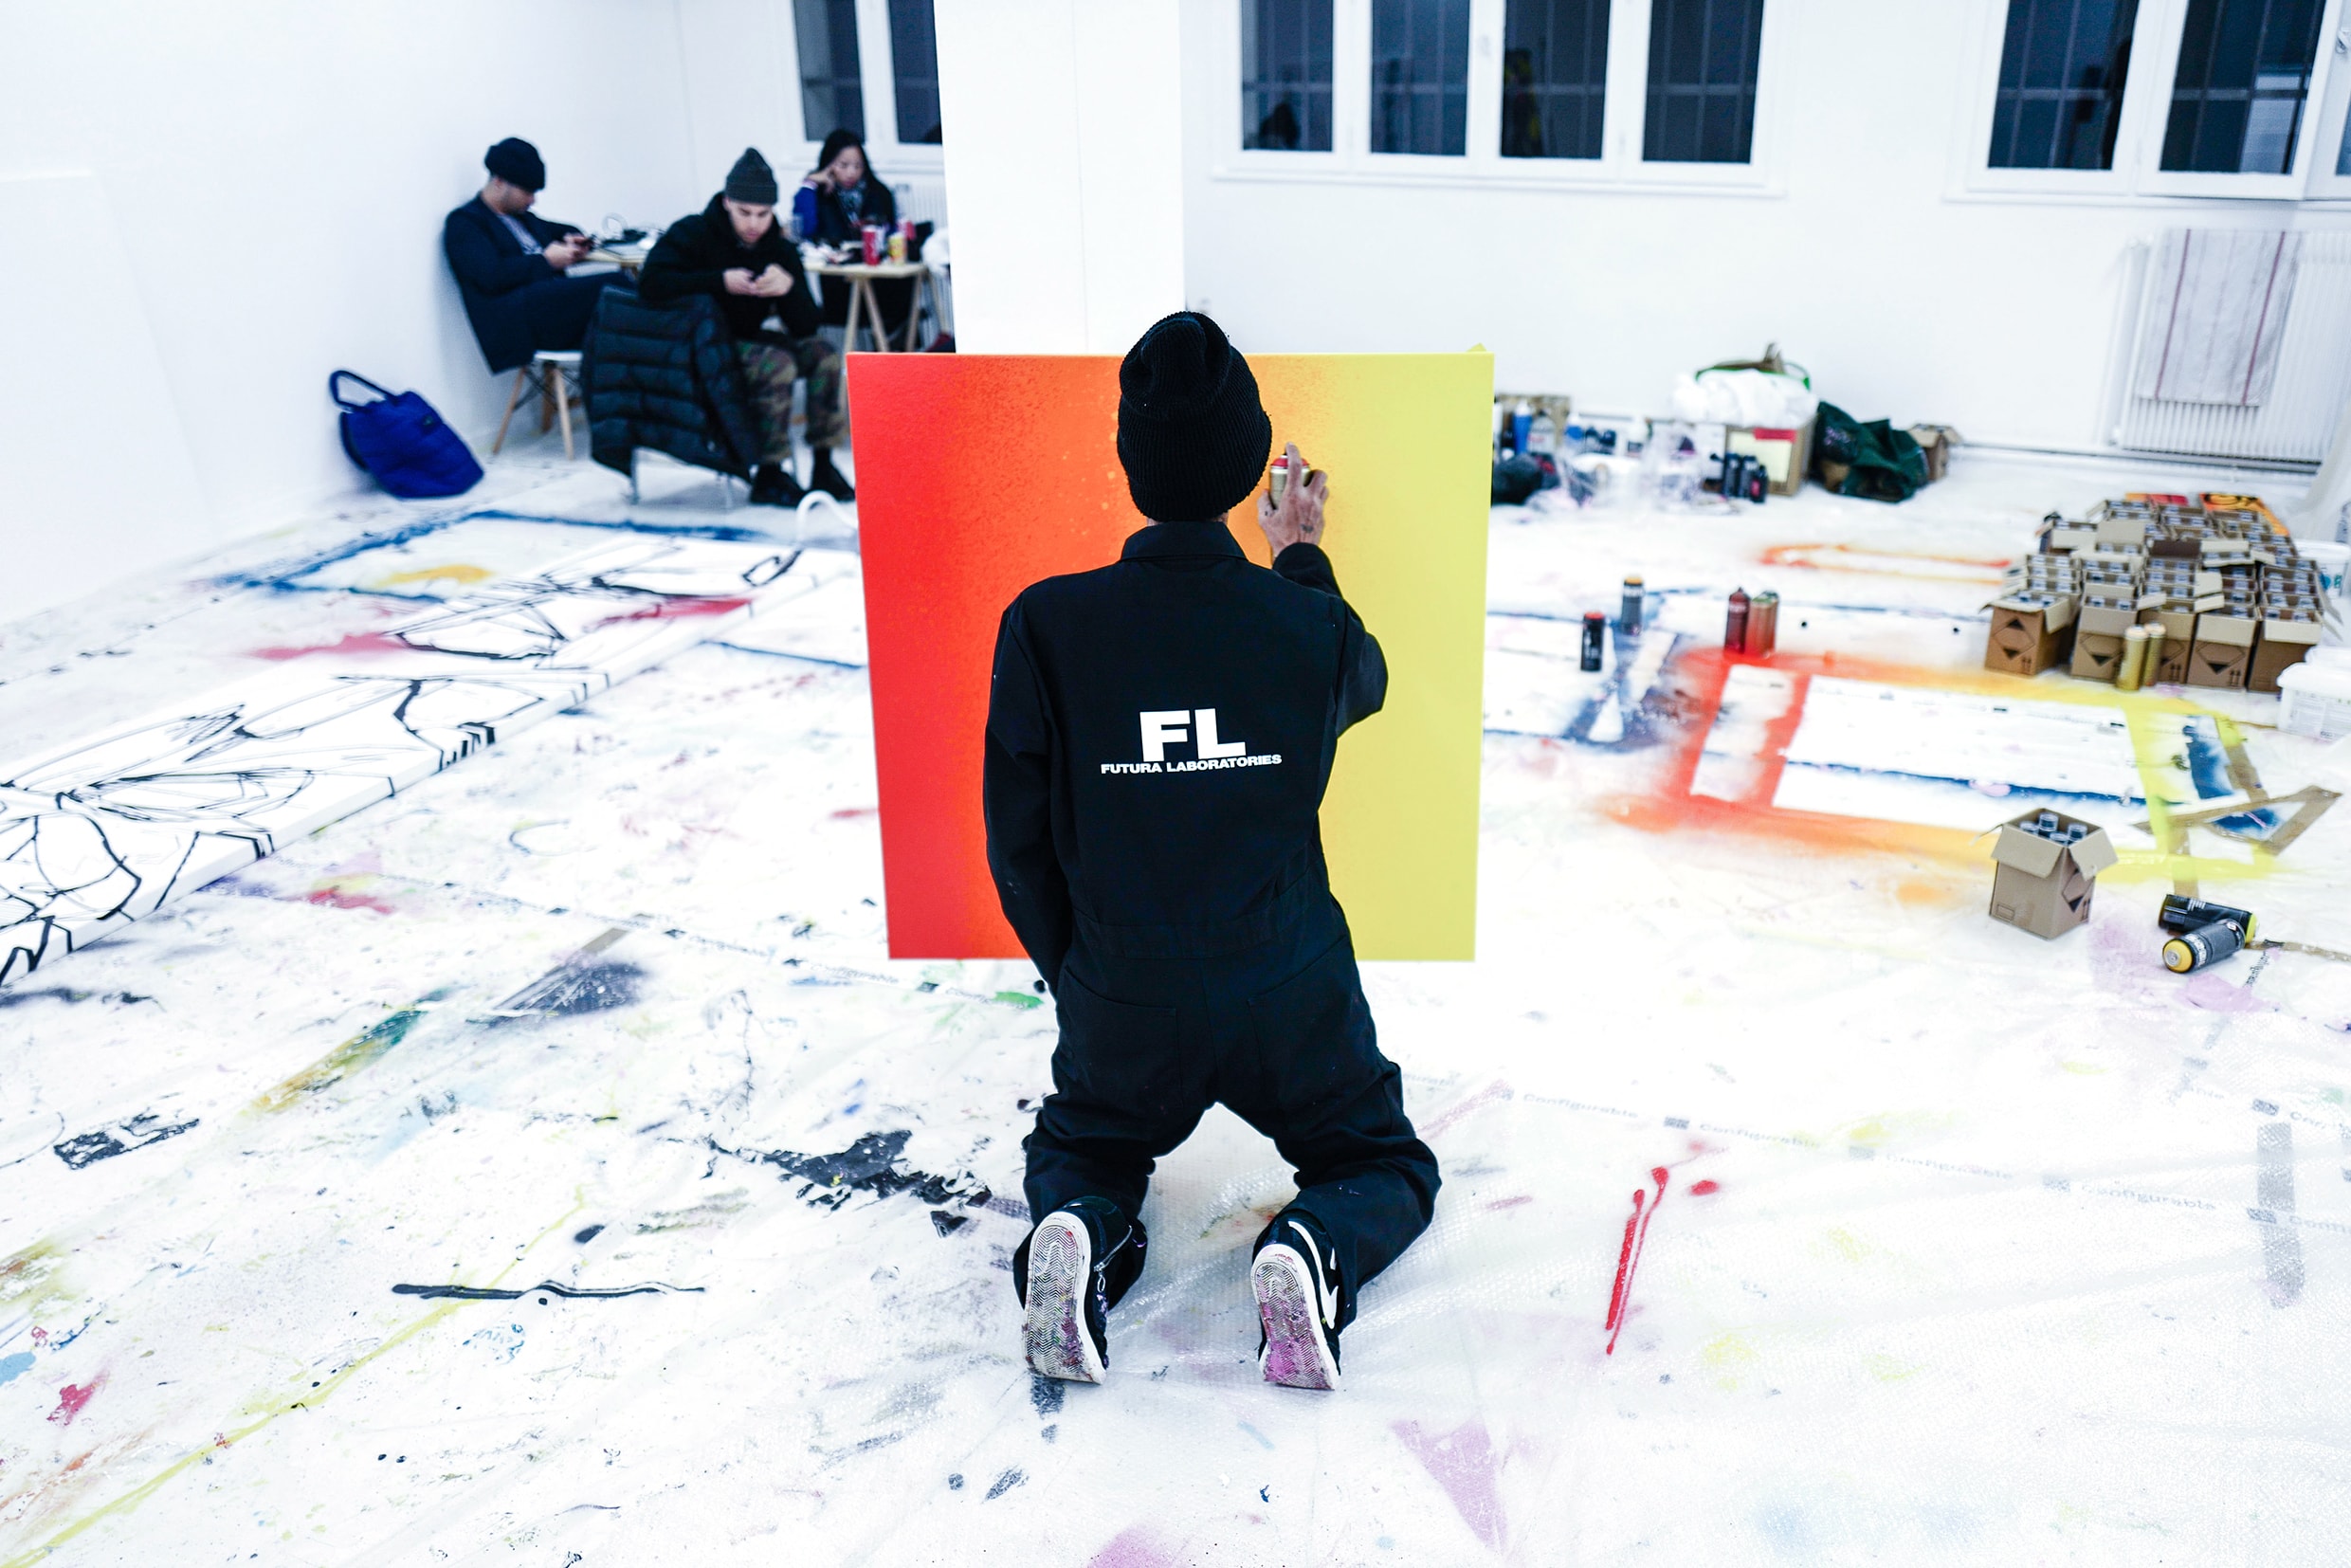 傳奇塗鴉藝術家 Futura 將于香港举办《Abstract Compass》展覽